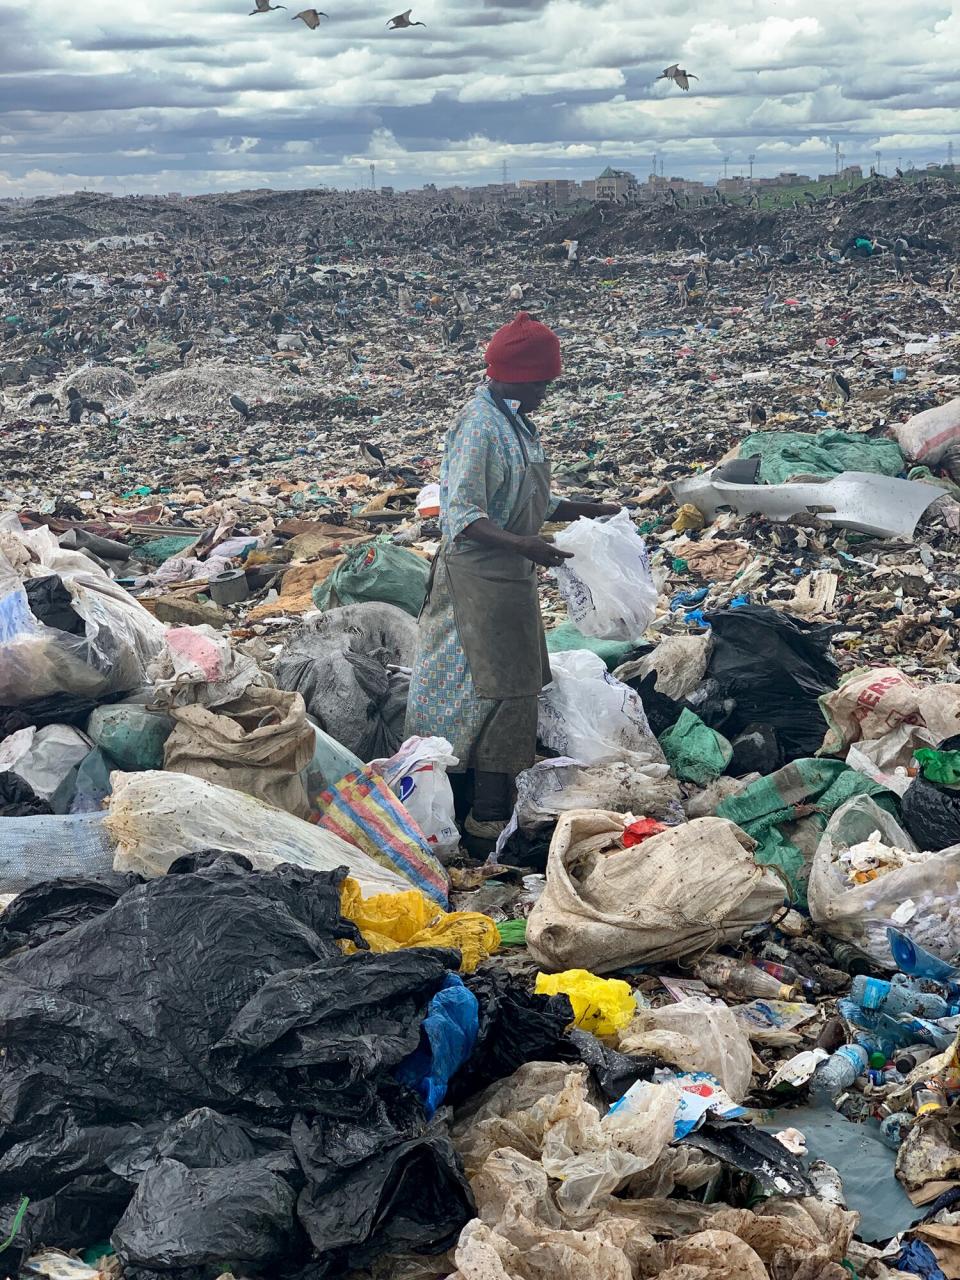 Scavenging in the dump, Dandora, 2019.